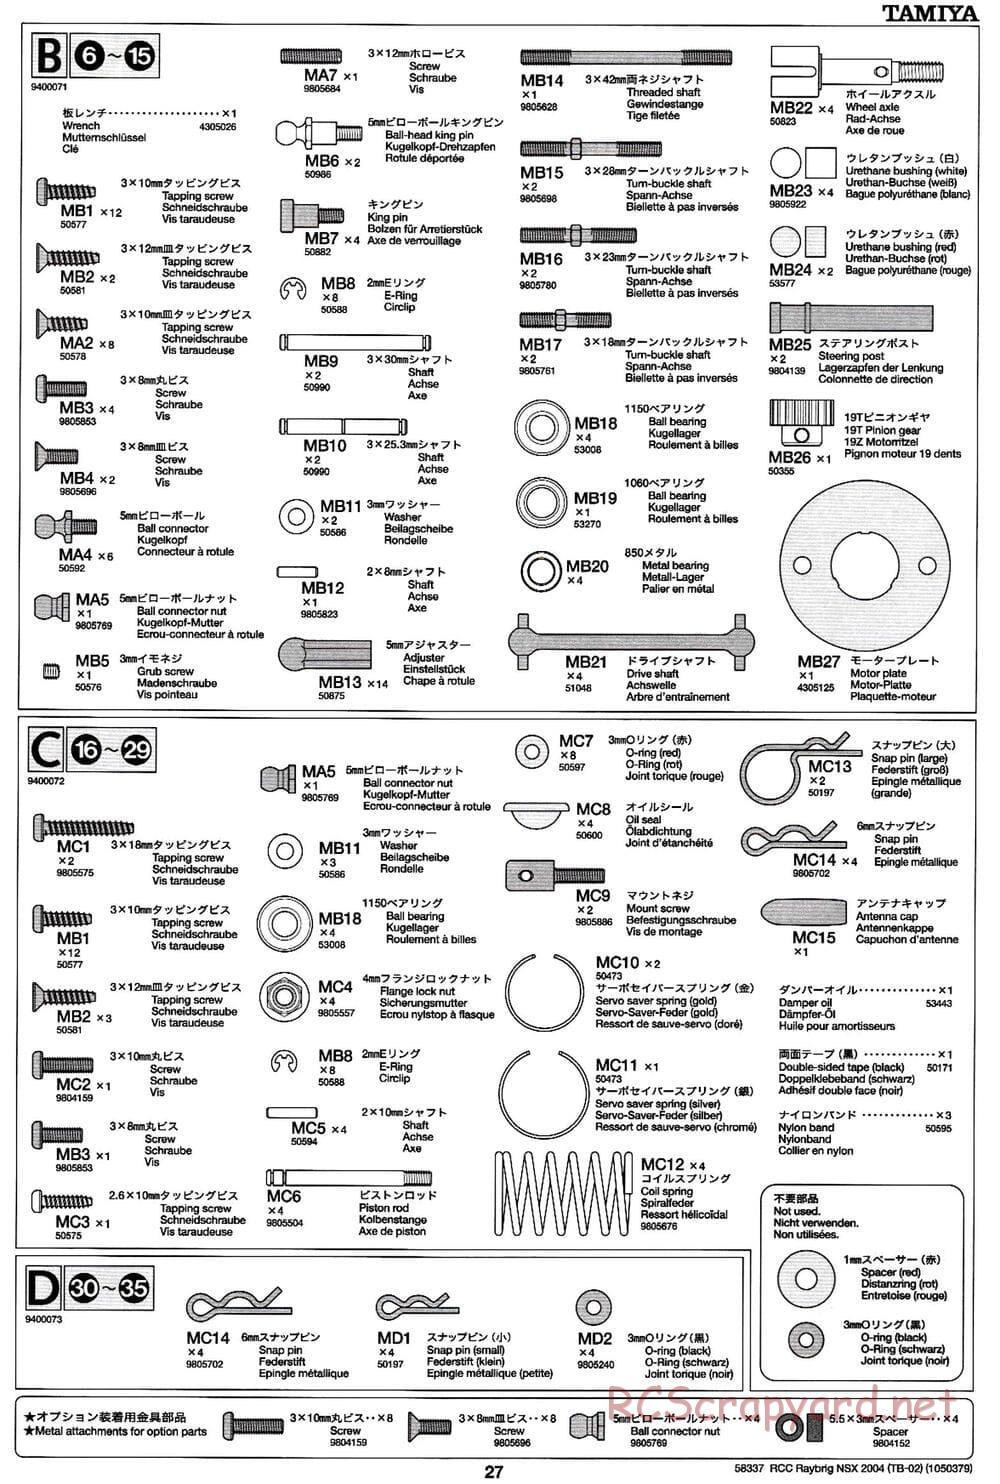 Tamiya - Raybrig NSX 2004 - TB-02 Chassis - Manual - Page 27